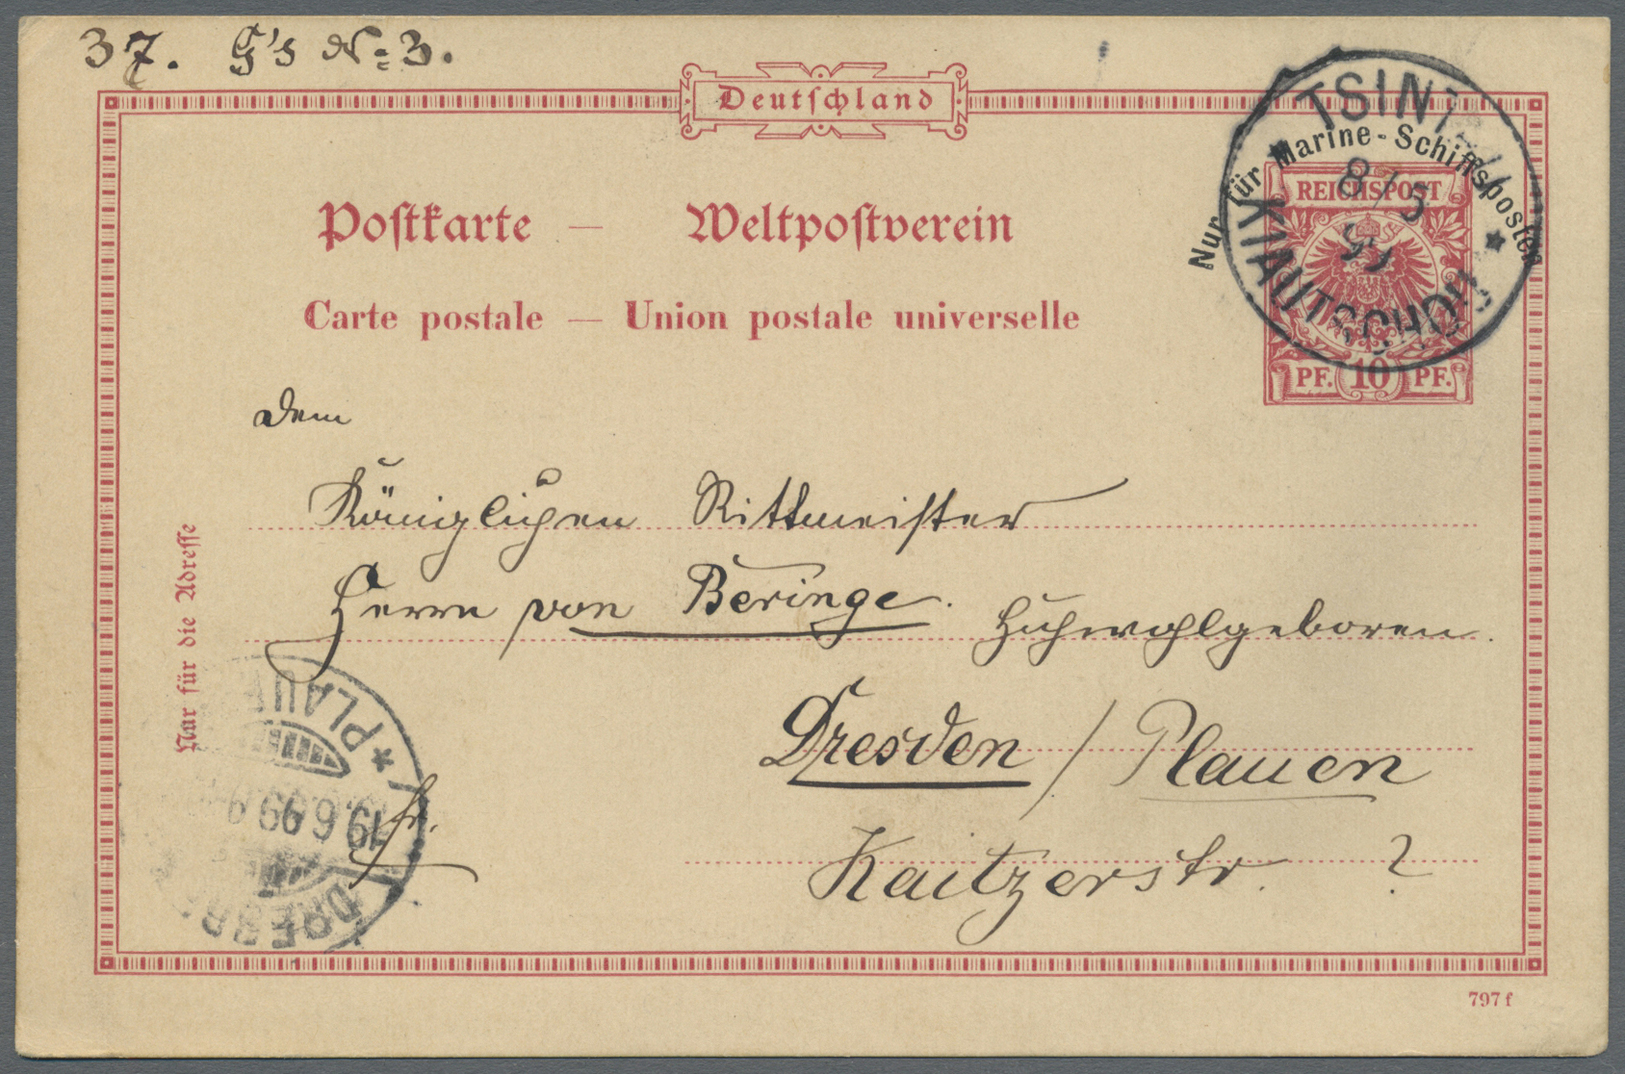 GA Deutsche Kolonien - Kiautschou - Ganzsachen: 1899 (8.5.), 10 Pfg. GA-Karte Krone/Adler Mit Aufdruck - Kiaochow